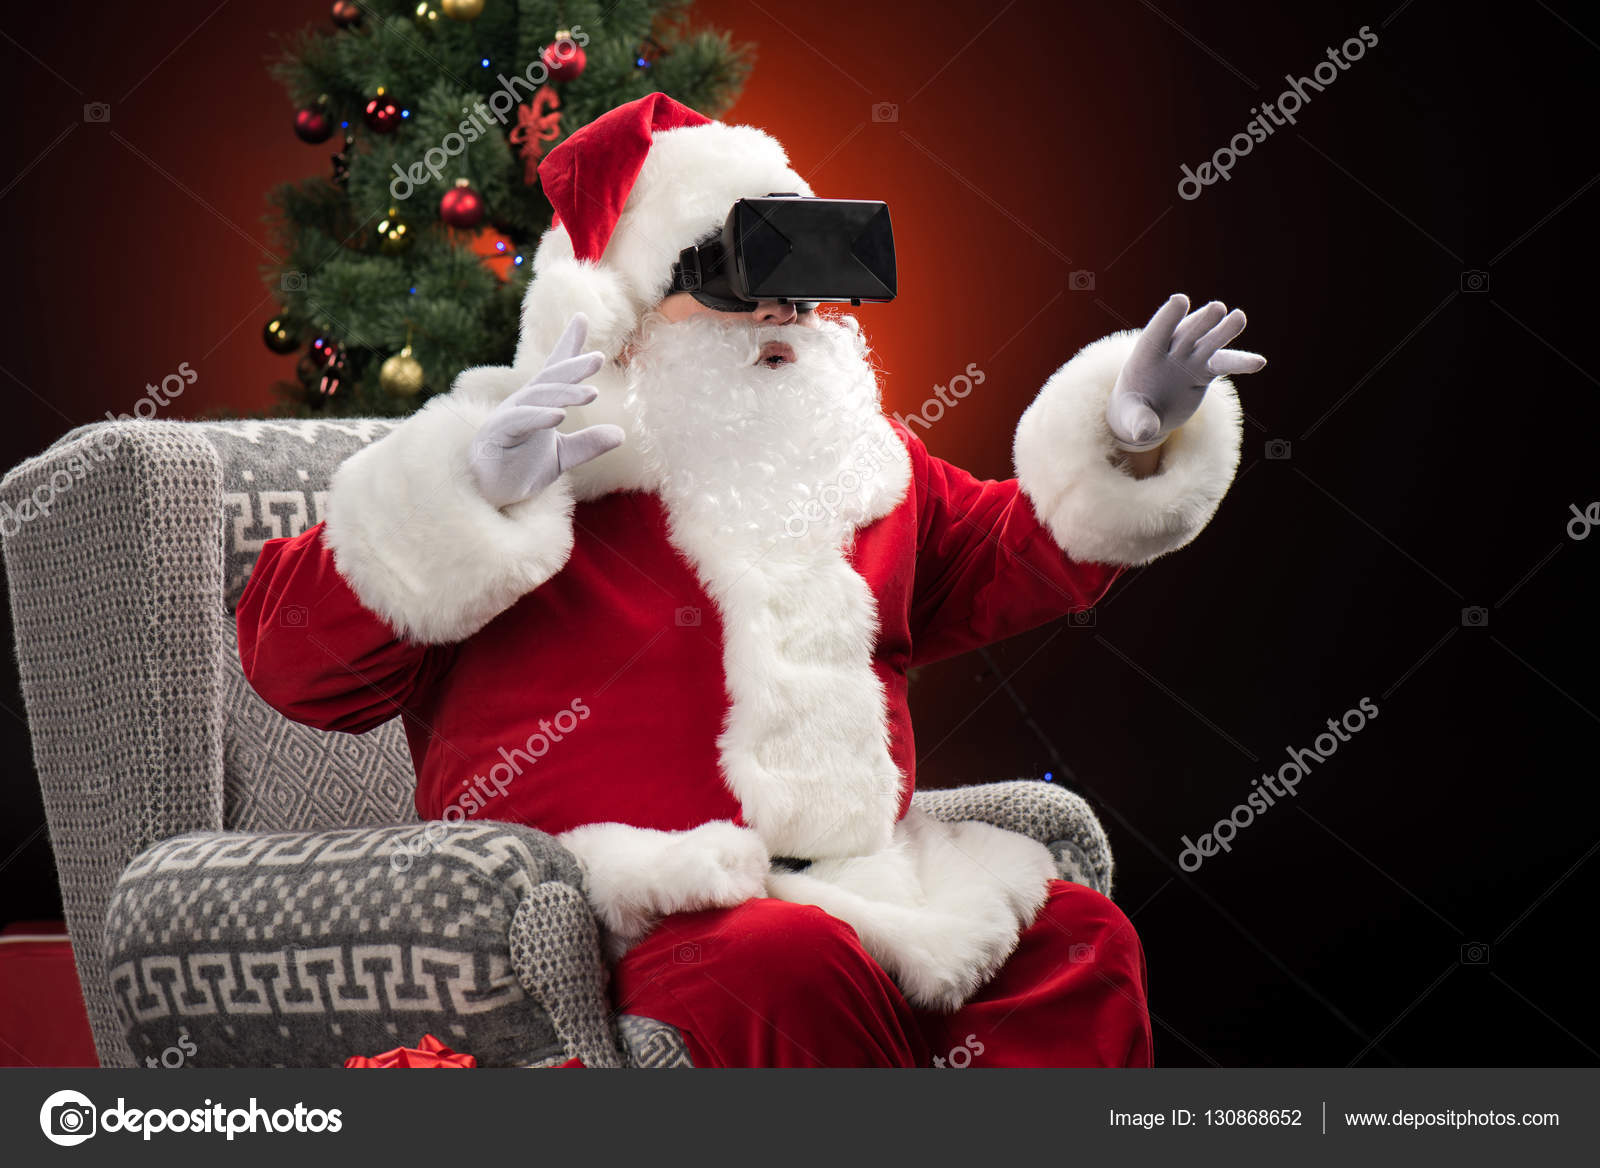 Babbo Natale Virtuale.Babbo Natale Indossando Cuffie Realta Virtuale Foto Stock C Dmitrypoch 130868652